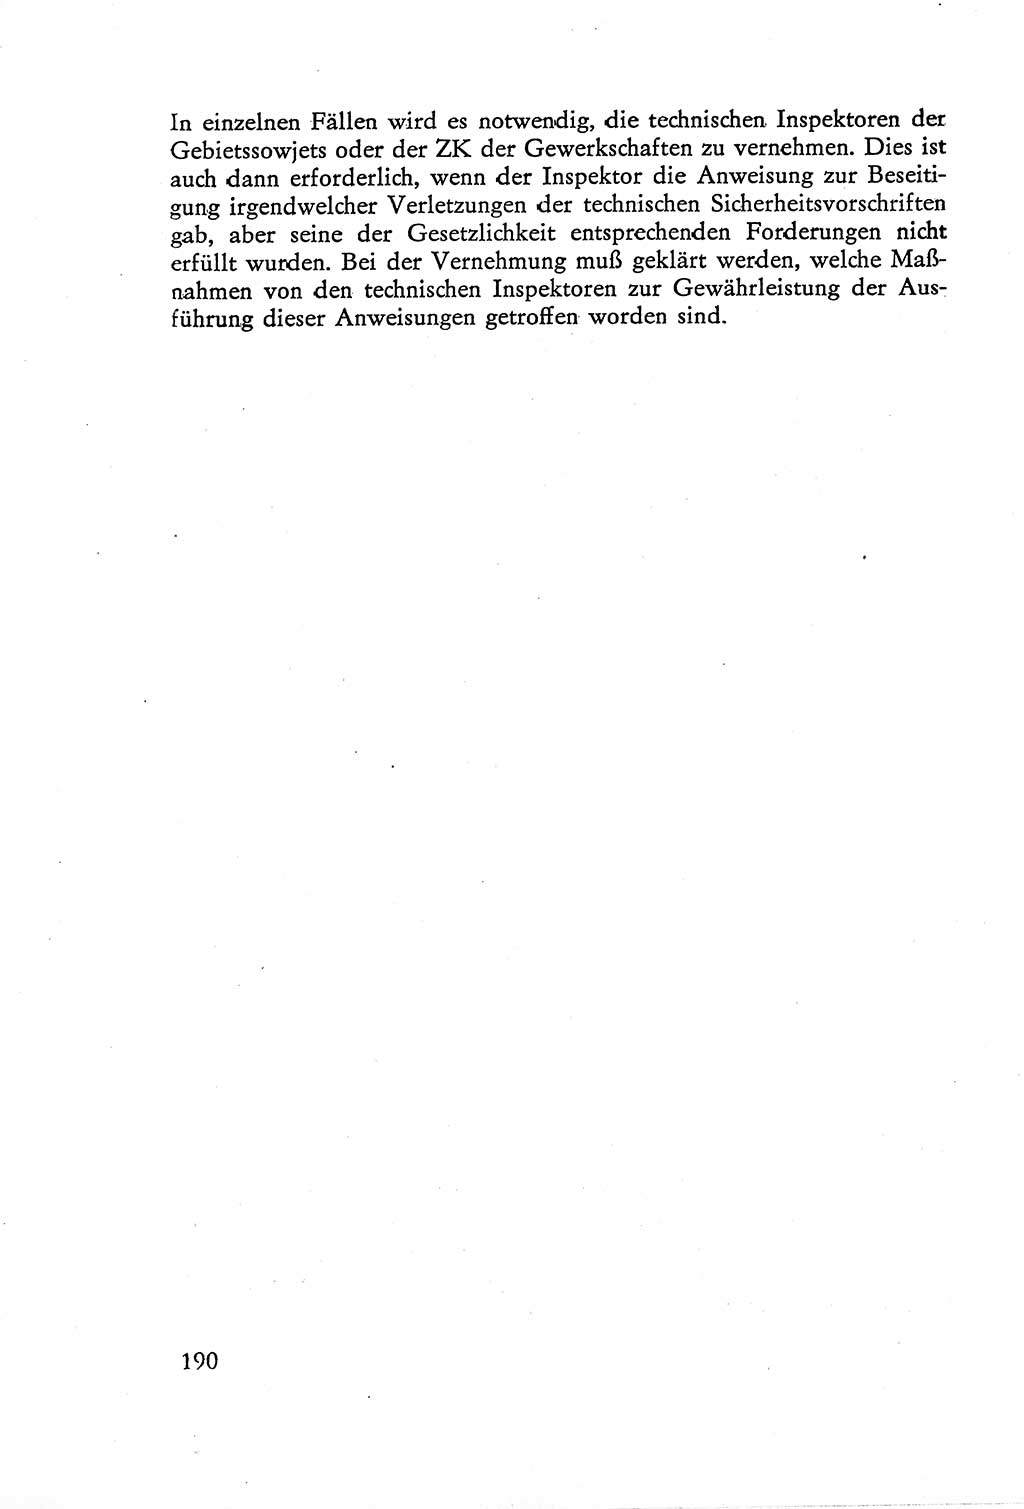 Die Untersuchung einzelner Verbrechensarten [Deutsche Demokratische Republik (DDR)] 1960, Seite 190 (Unters. Verbr.-Art. DDR 1960, S. 190)